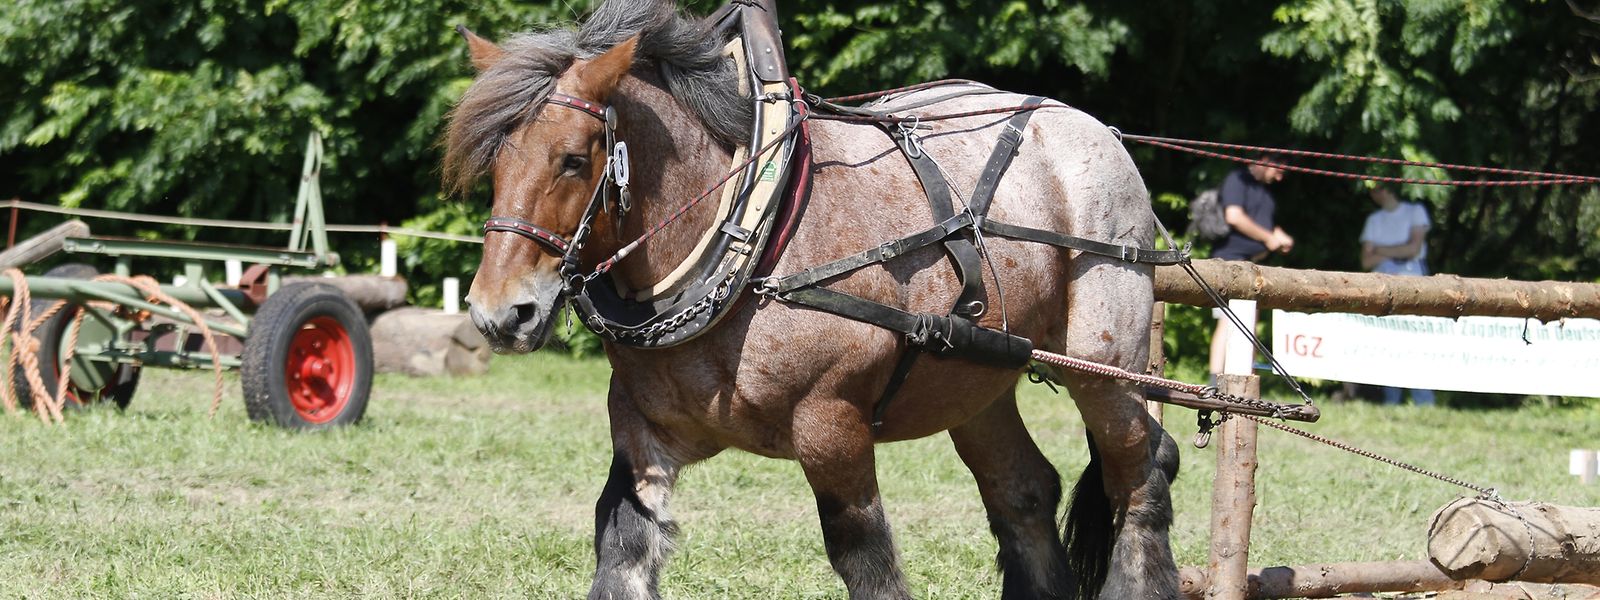 Le cheval  ardennais s'illustre par sa force et son caractère remarquables.